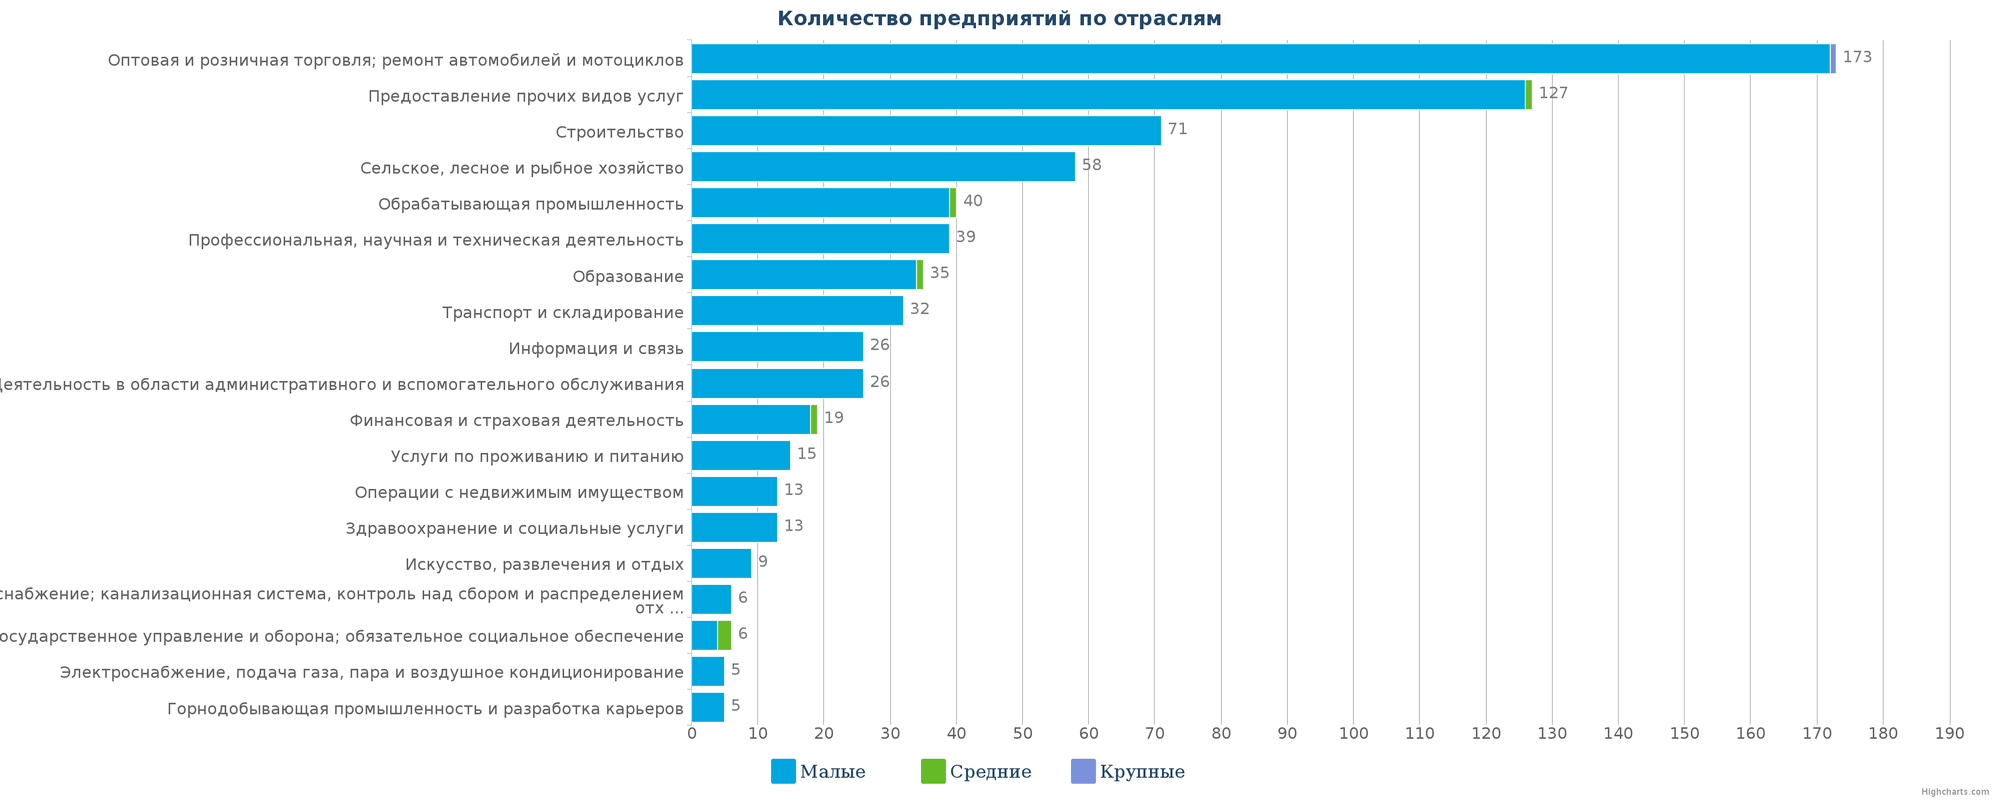 Новые предприятия в государственном реестре Казахстана